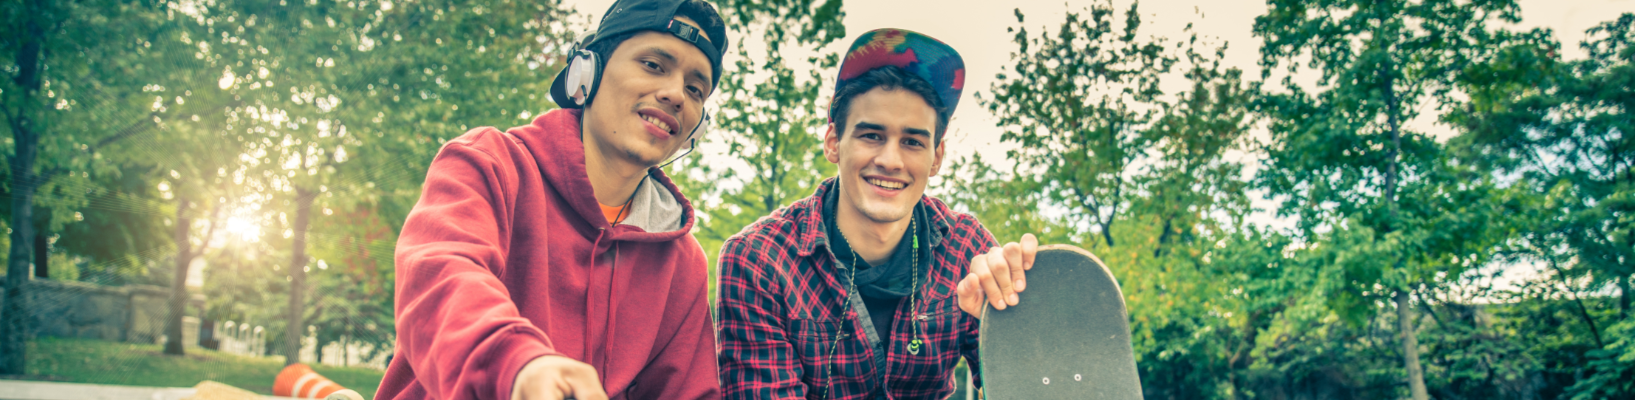 Skateboard und 2 Freunde